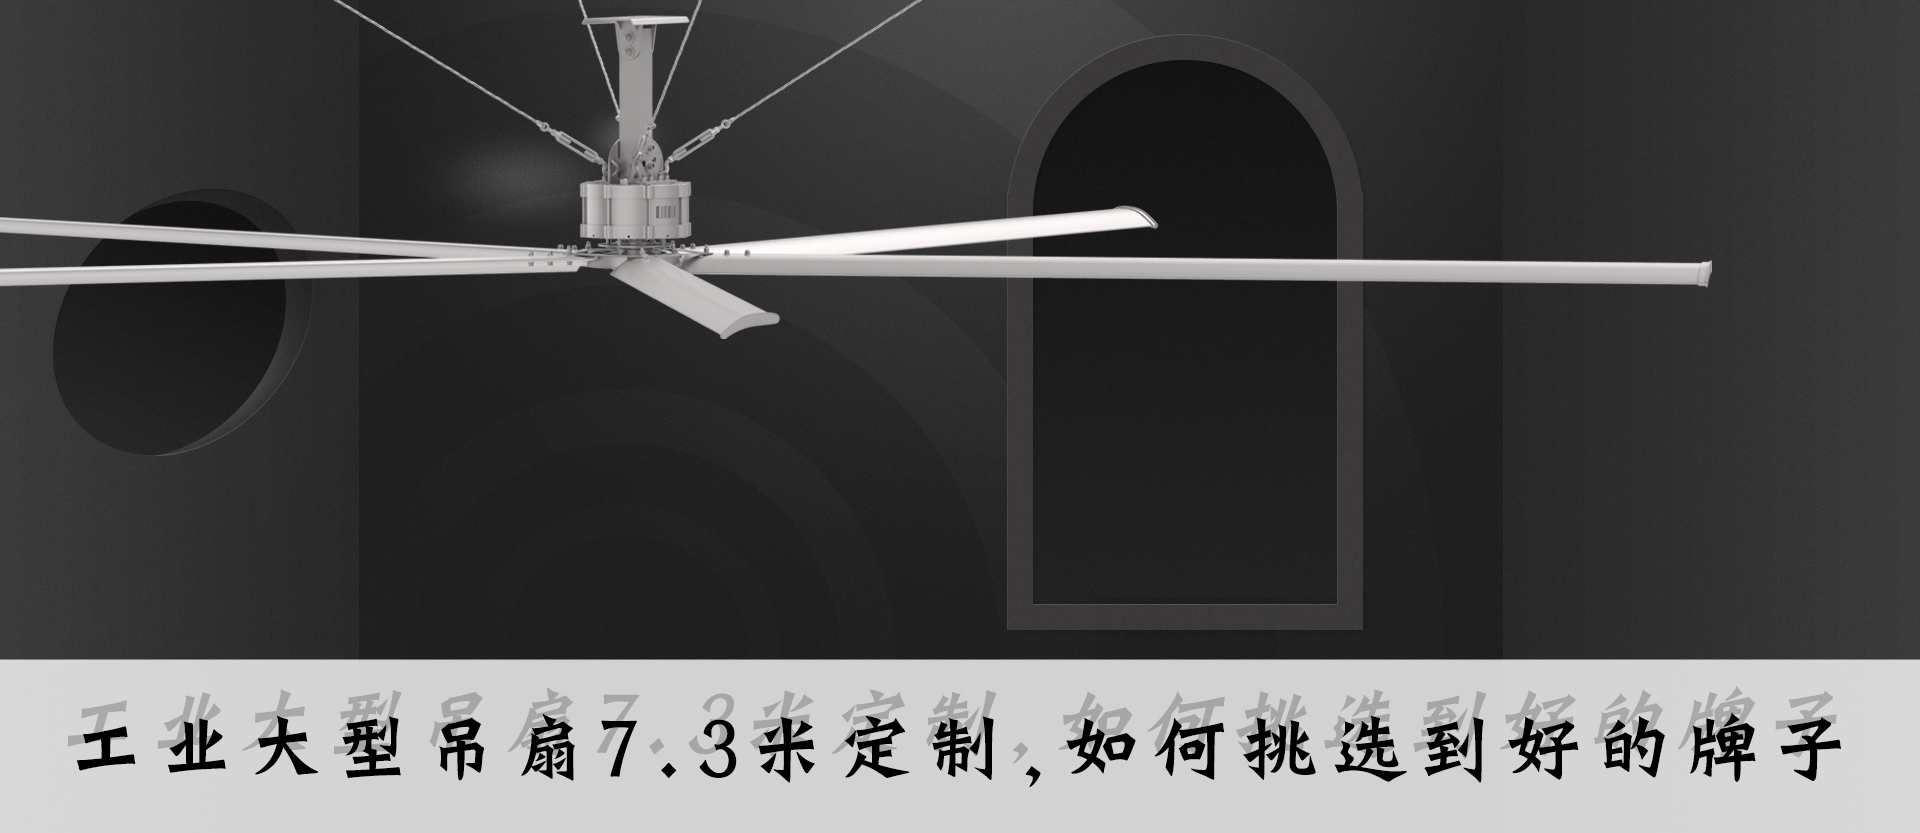 奇翔7.3米风扇定制